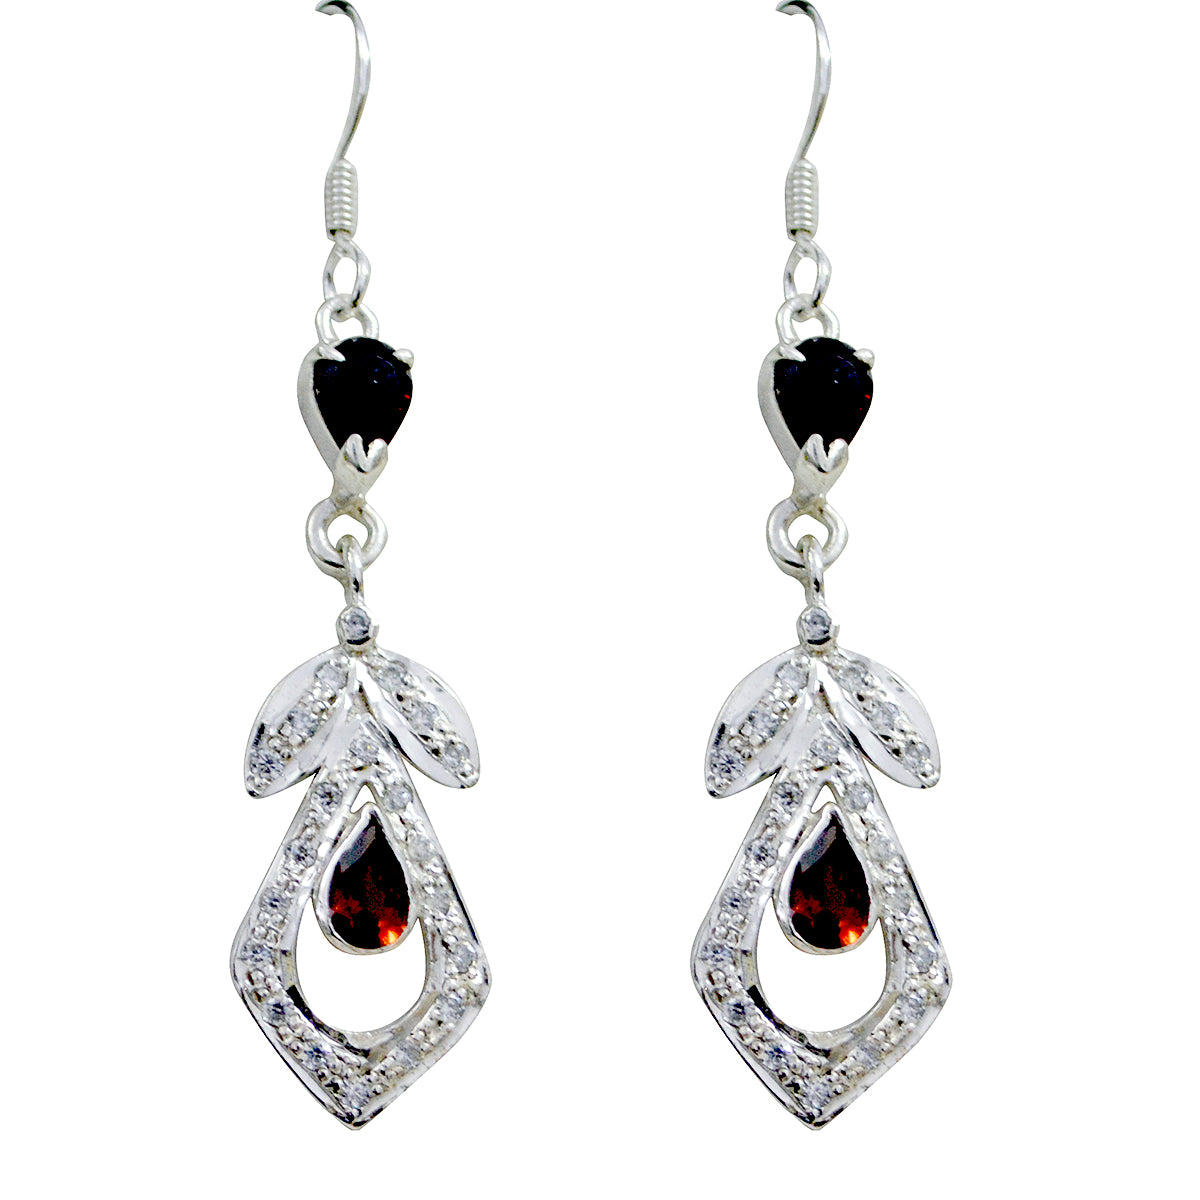 Riyo Nice Gemstone multi shape Faceted Red Garnet Silver Earrings gift for st. patricks day